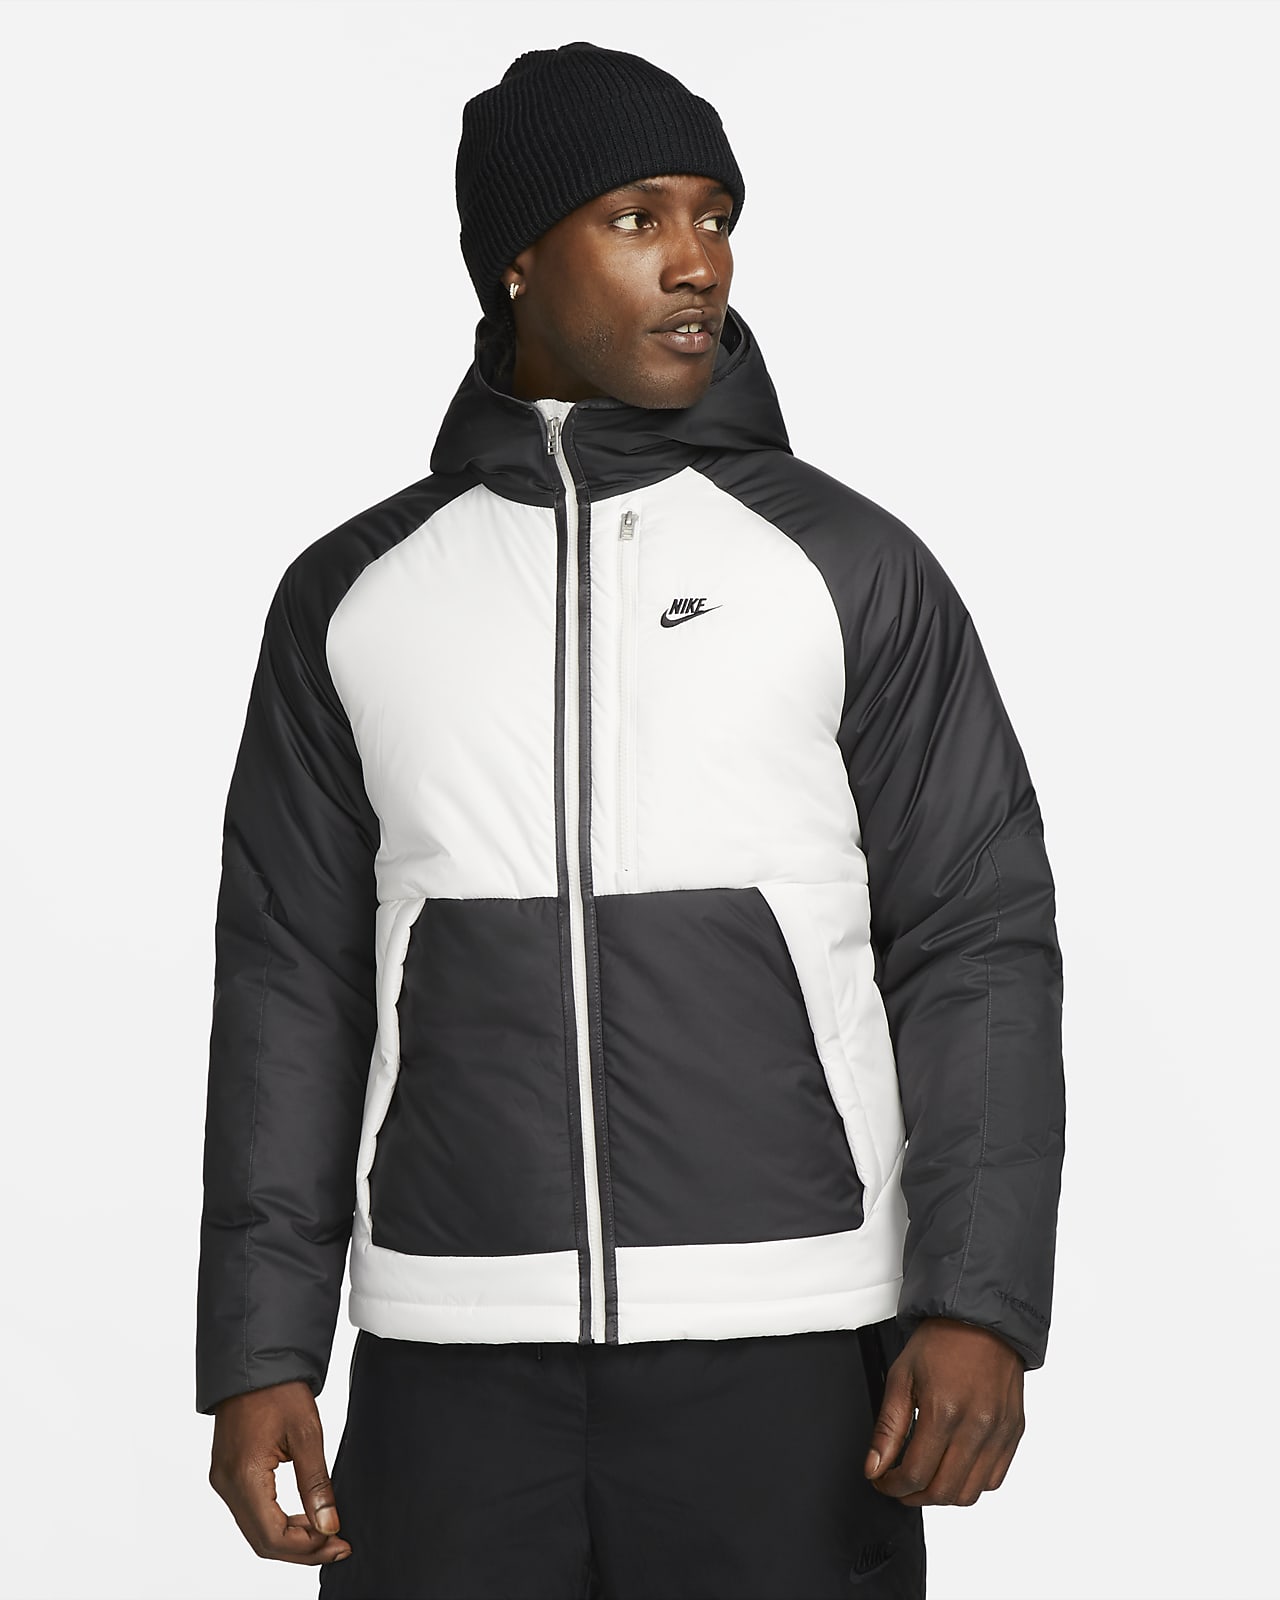 ik ben trots Kano Kreek Nike Sportswear Therma-FIT Legacy Men's Hooded Jacket. Nike.com